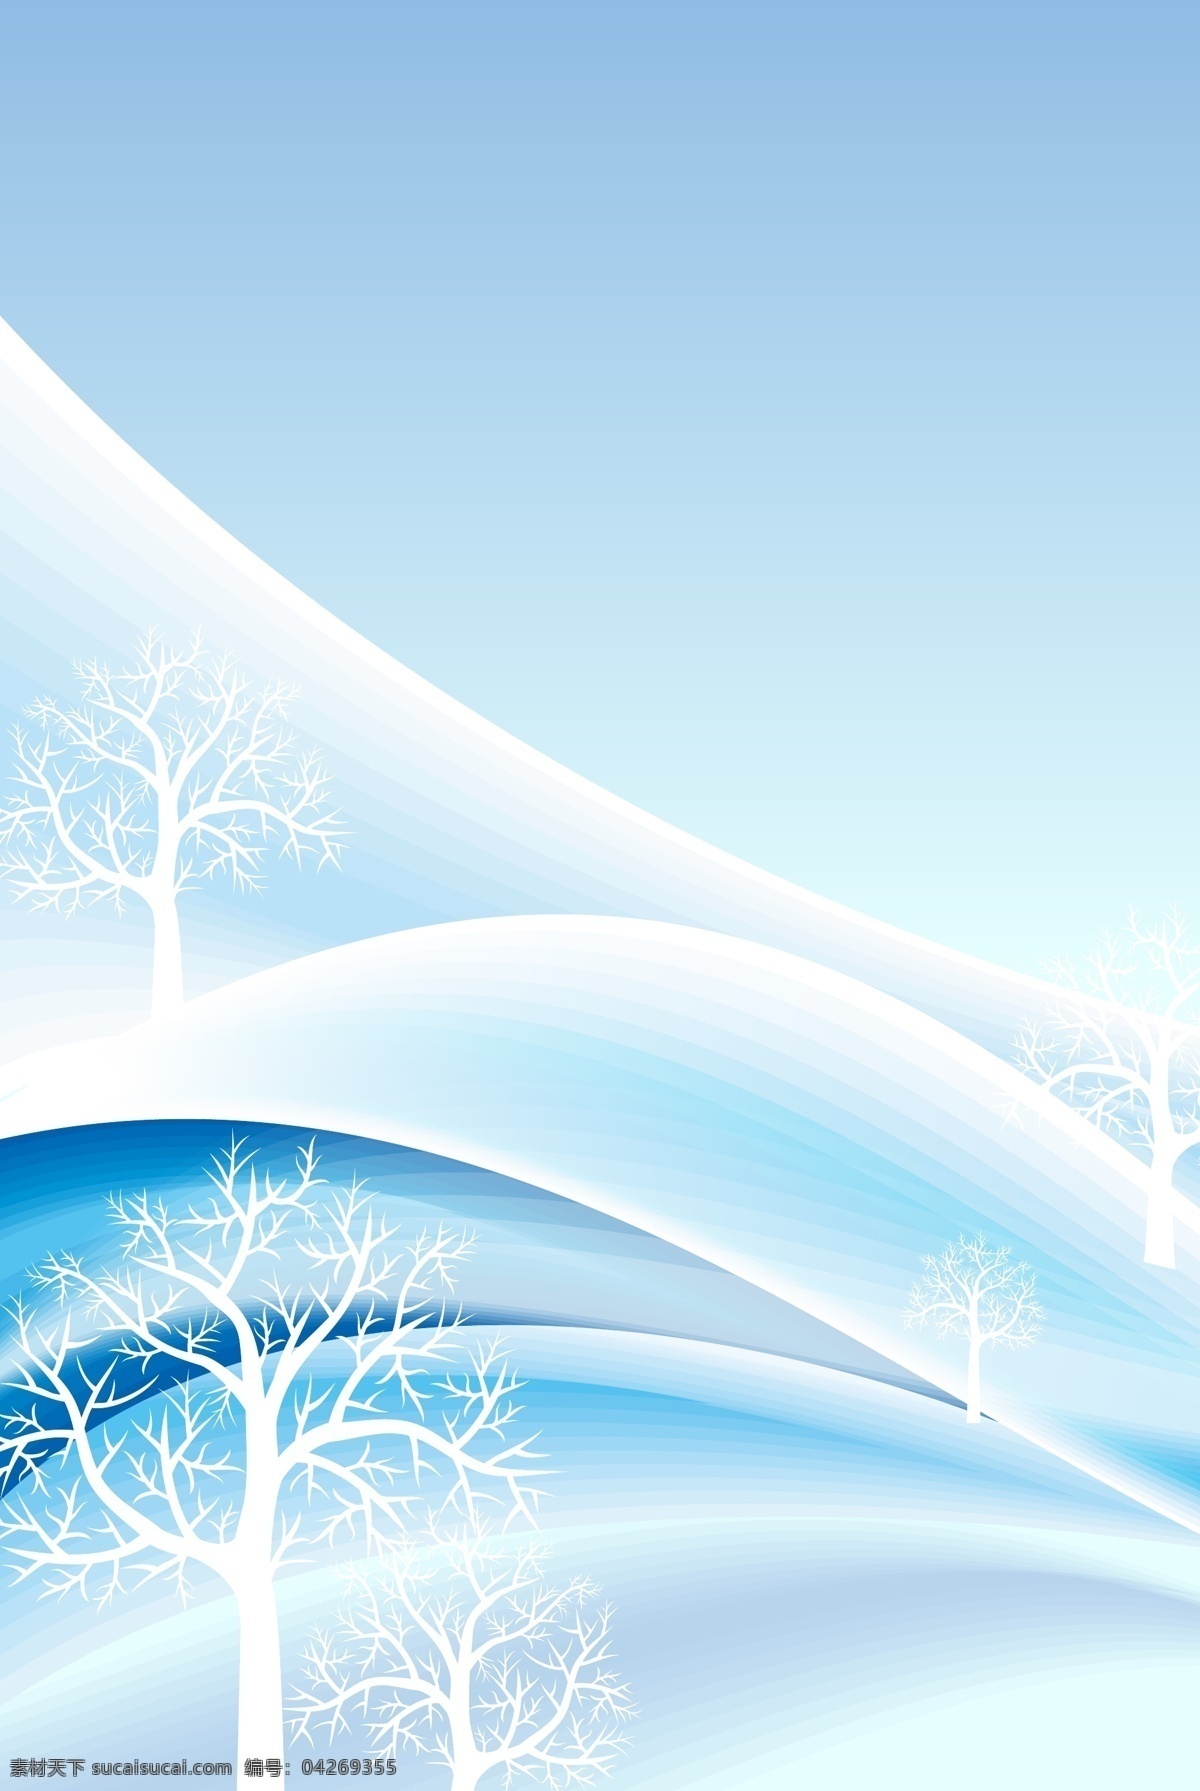 圣诞 雪地 冬天 卡通 展板 背景 唯美 简约 蓝色 冬至背景 冬至节气